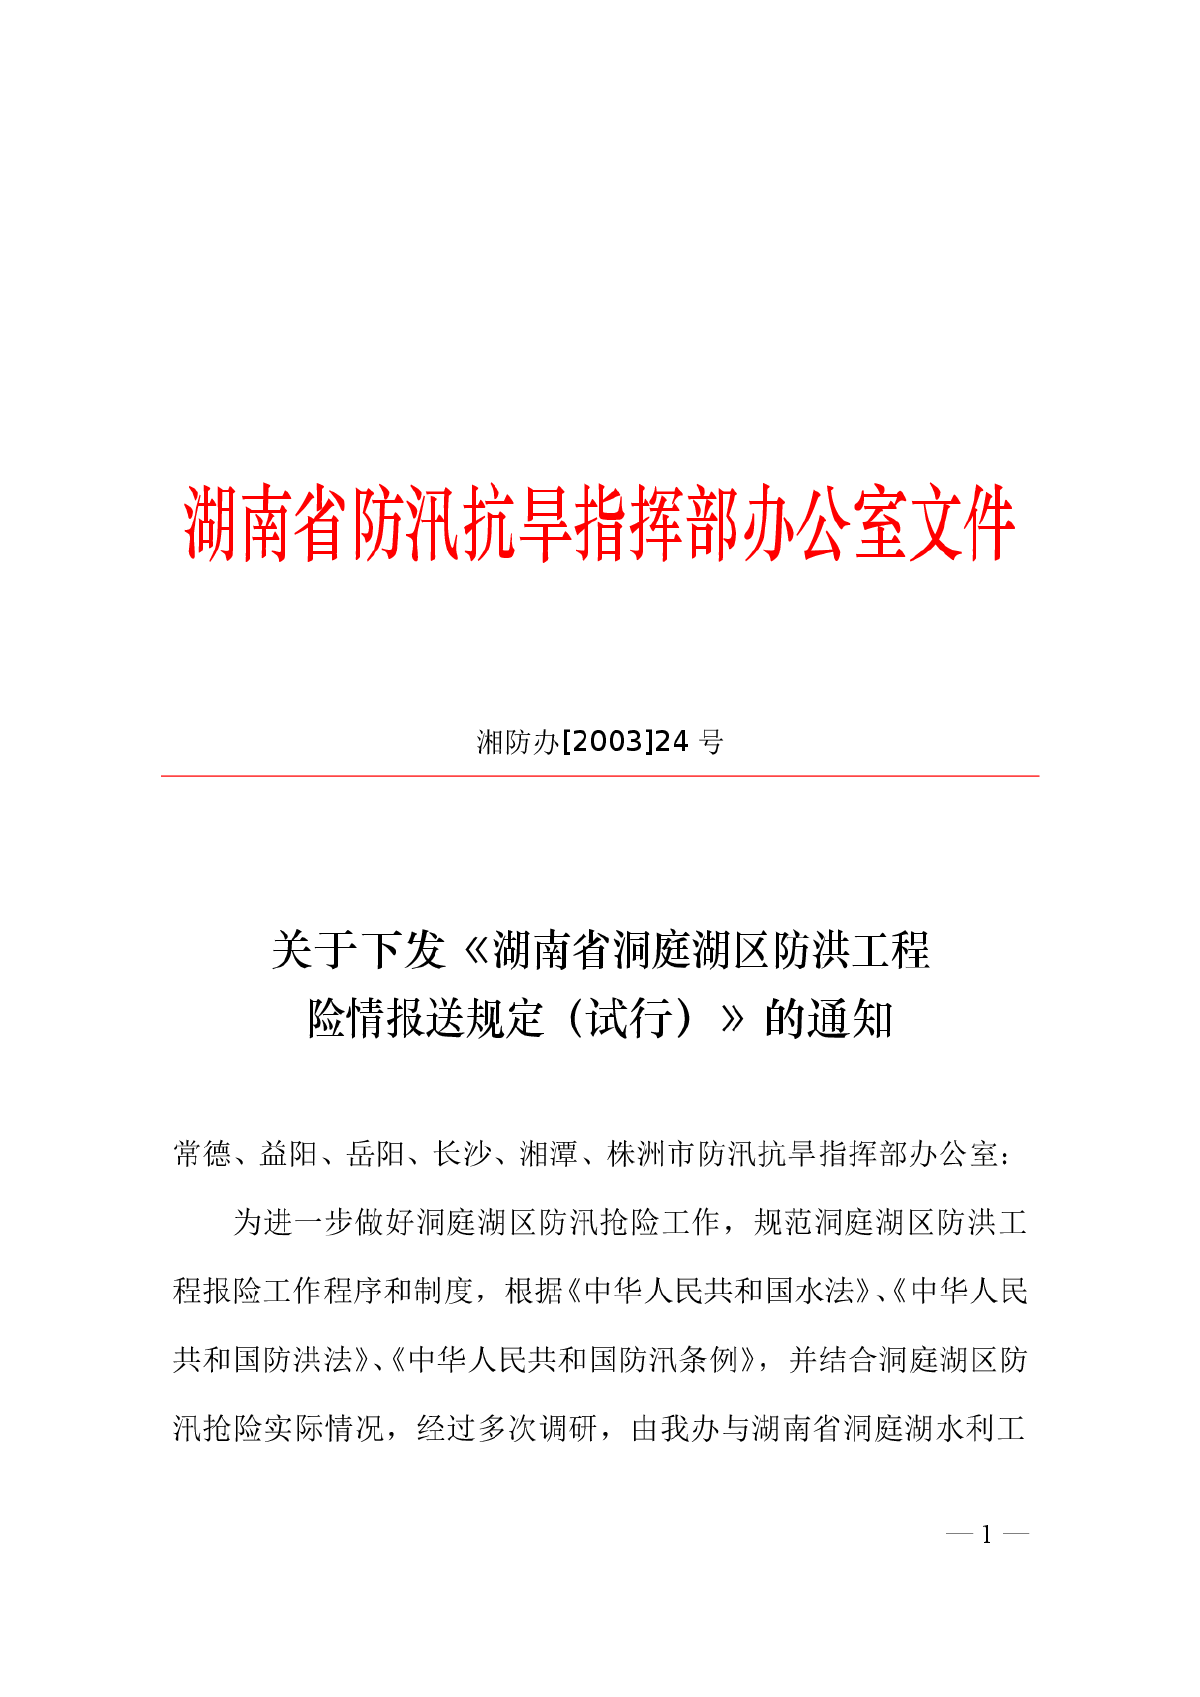 湖南省洞庭湖区防洪工程险情报送规定